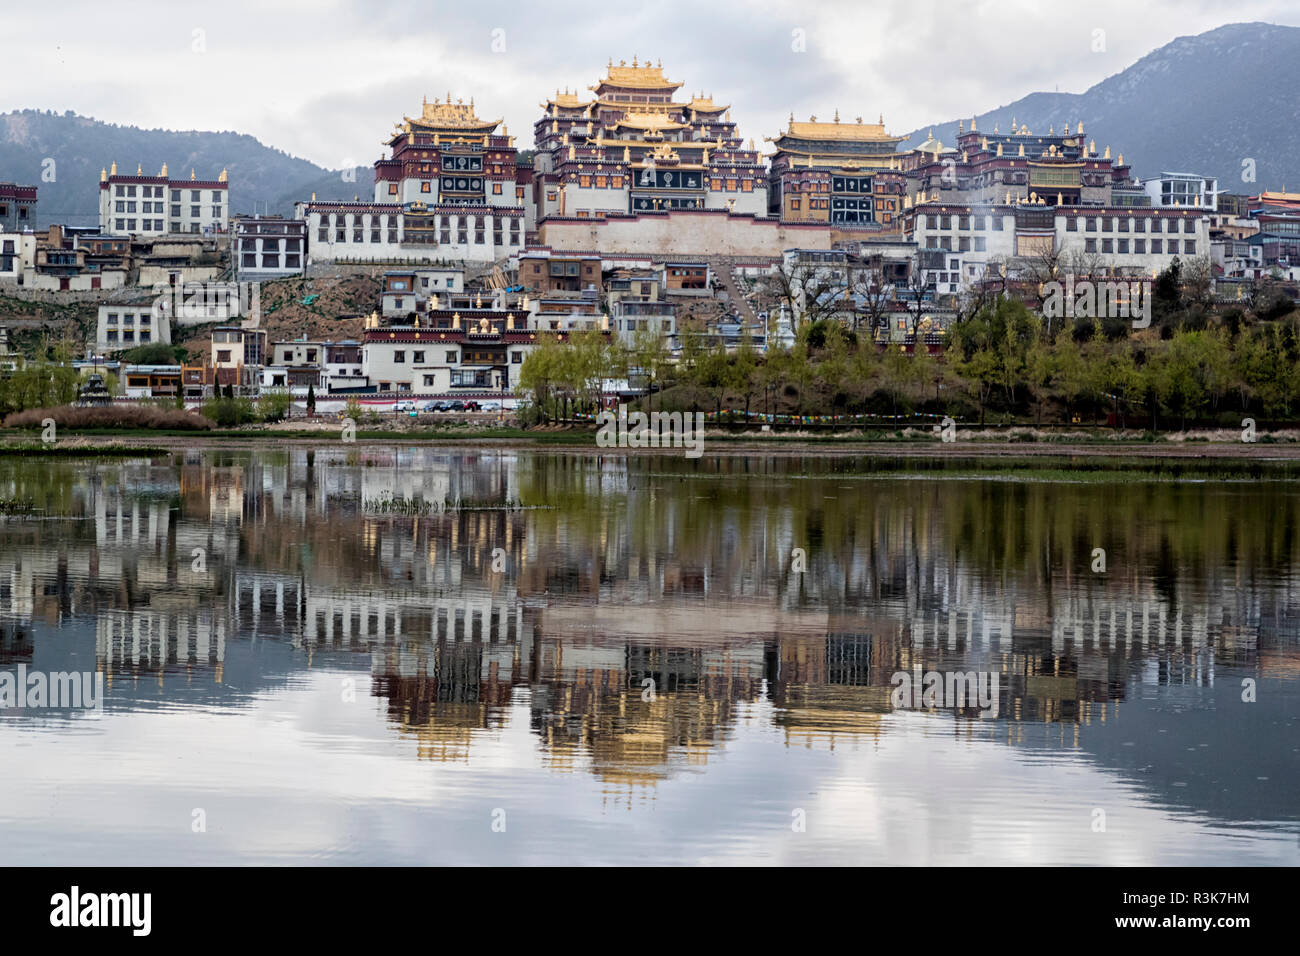 China, Yunnan Province, Northwestern Yunnan, Shangri-La, Songzanlin Monastery. The monastery at dawn reflected in the sacred lake. Stock Photo